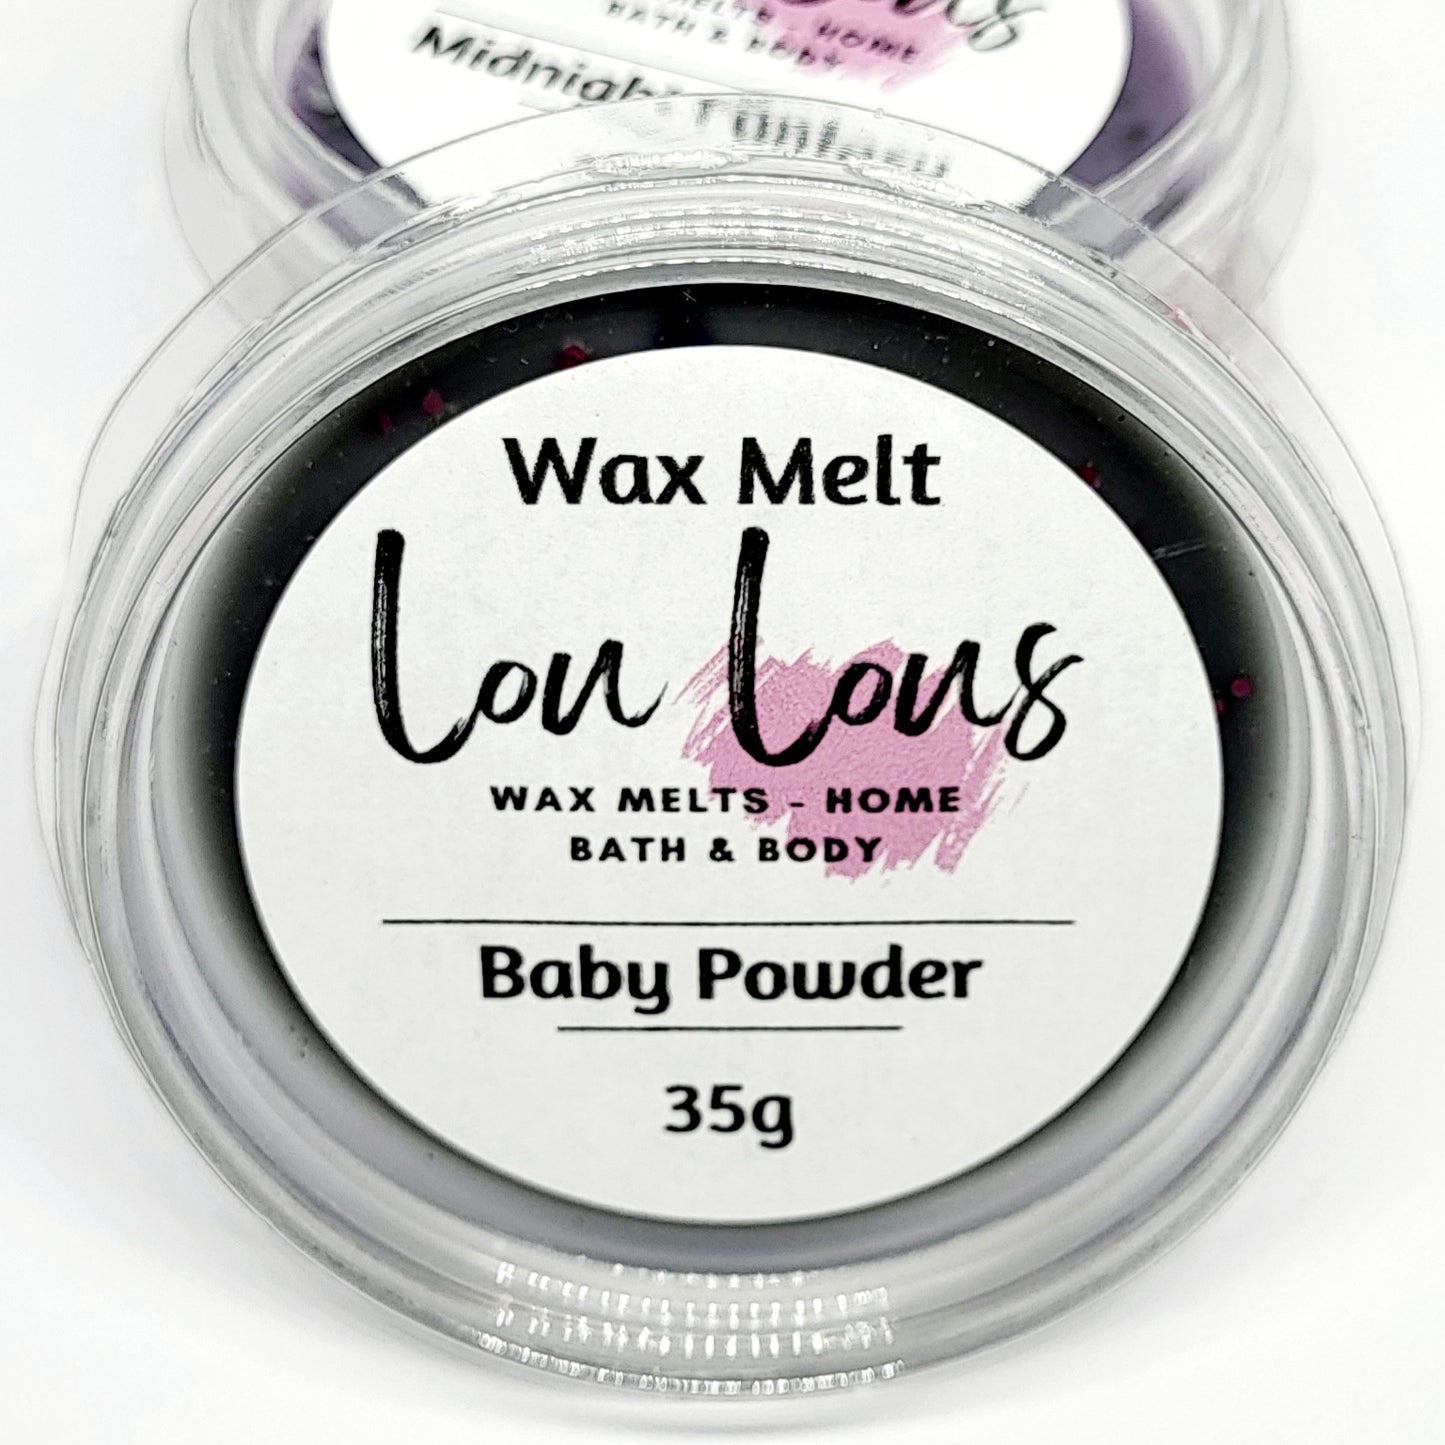 Baby Powder Wax Melt Pot